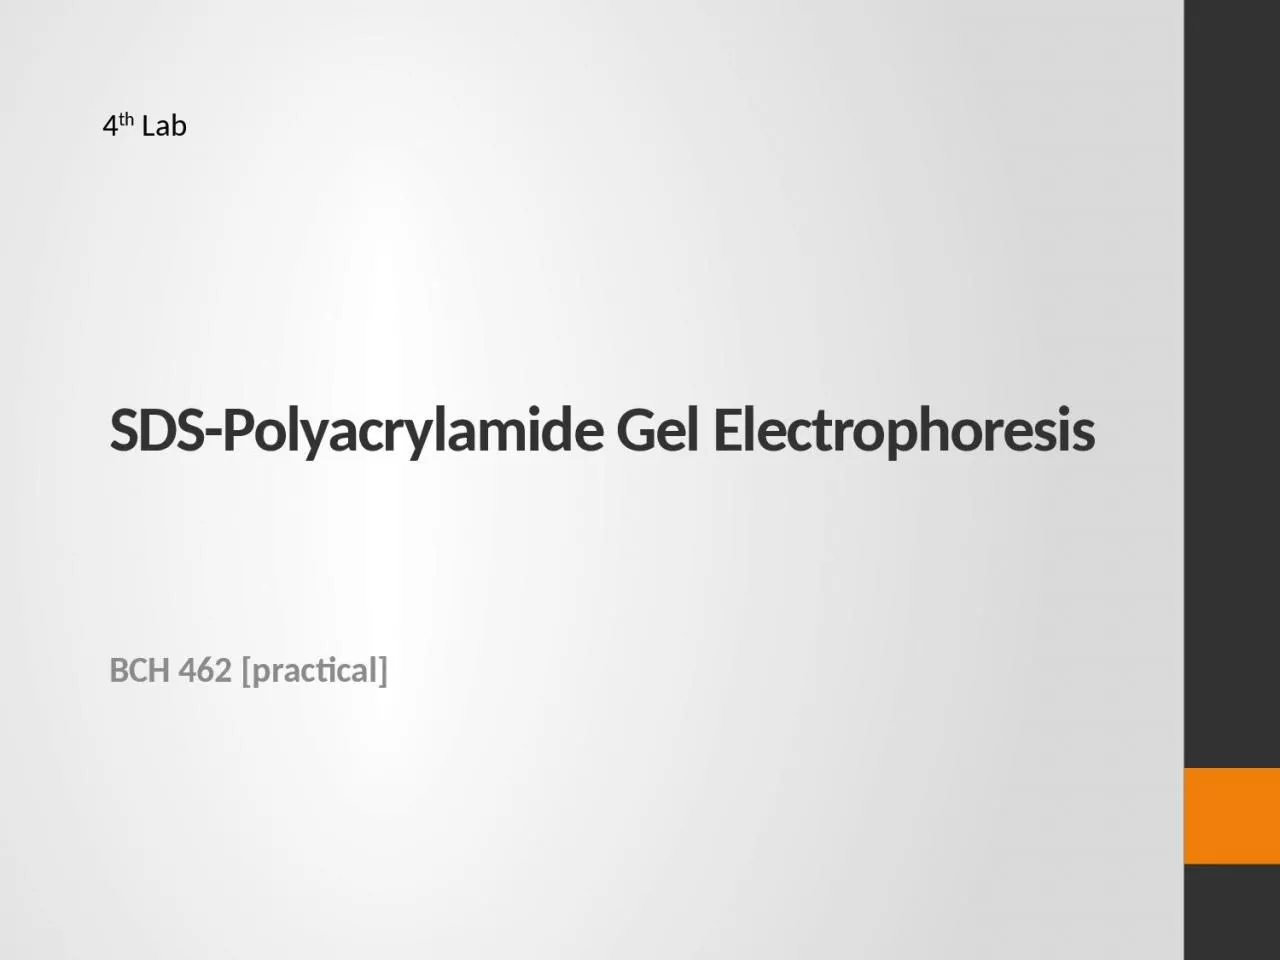 SDS-Polyacrylamide Gel Electrophoresis